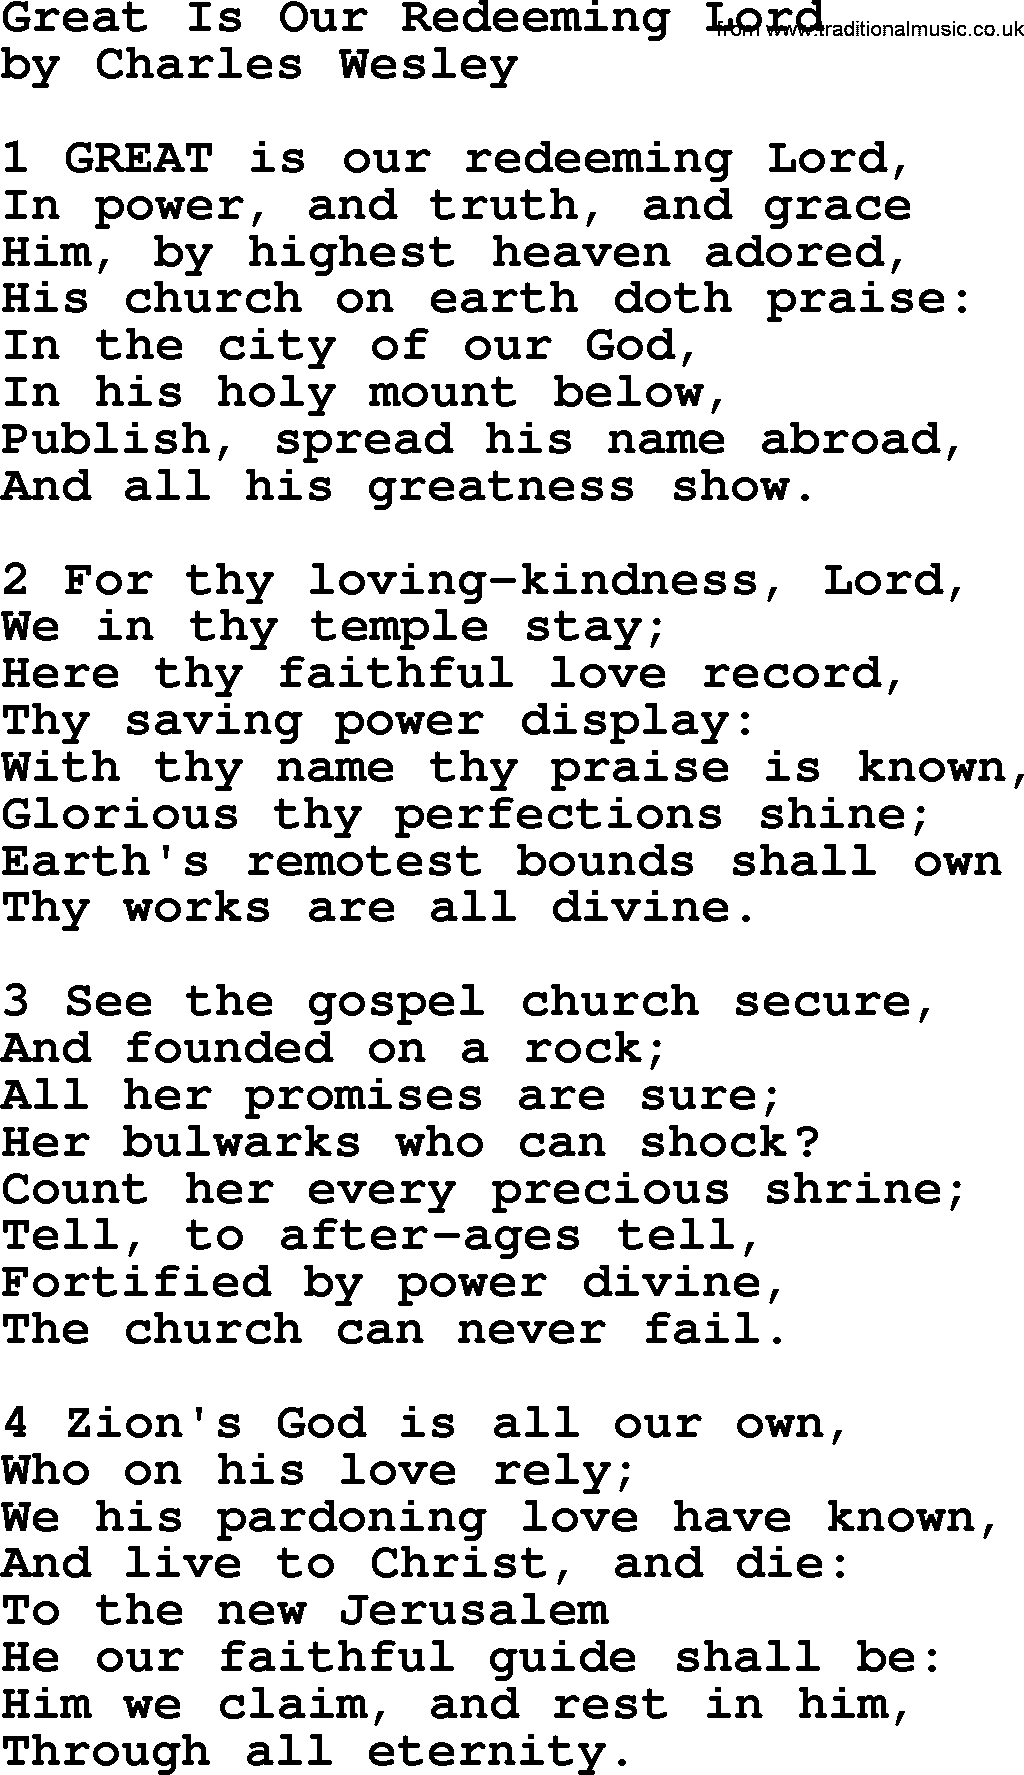 Charles Wesley hymn: Great Is Our Redeeming Lord, lyrics